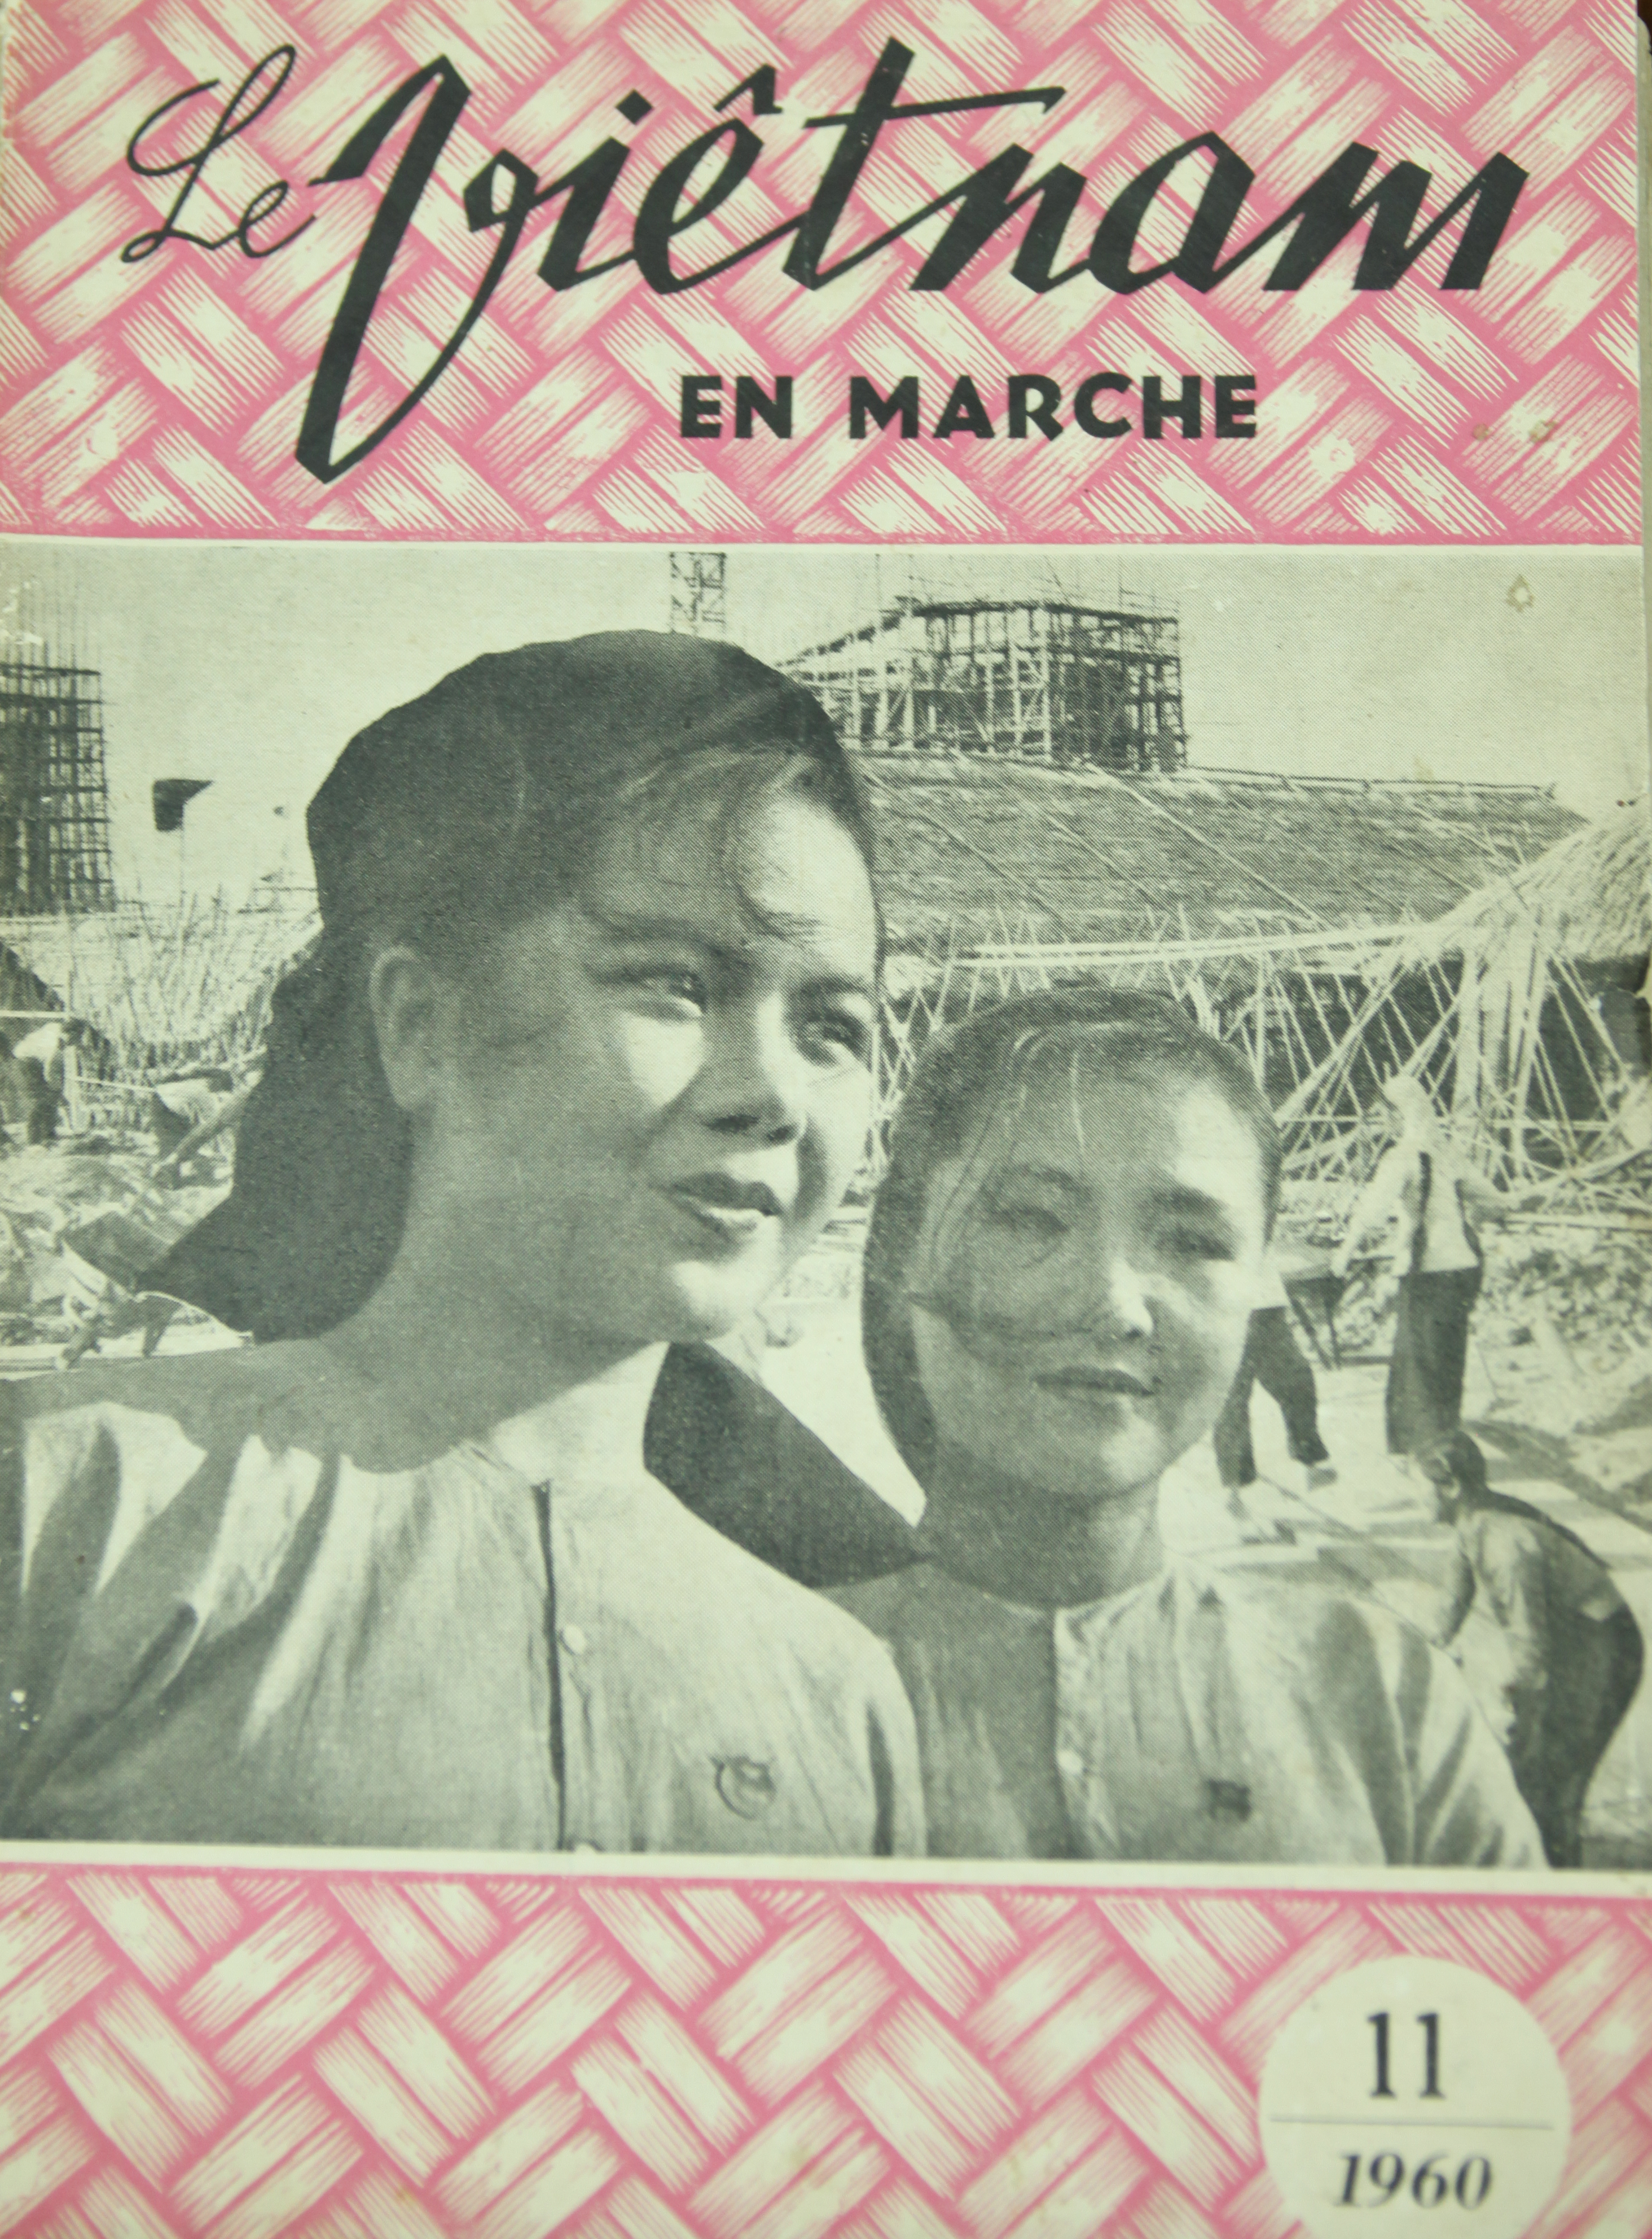 Cảnh phim “Cô gái công trường” lên bìa tạp chí tiếng Pháp tháng 11/1960. (Ảnh: Nghệ sỹ cung cấp)